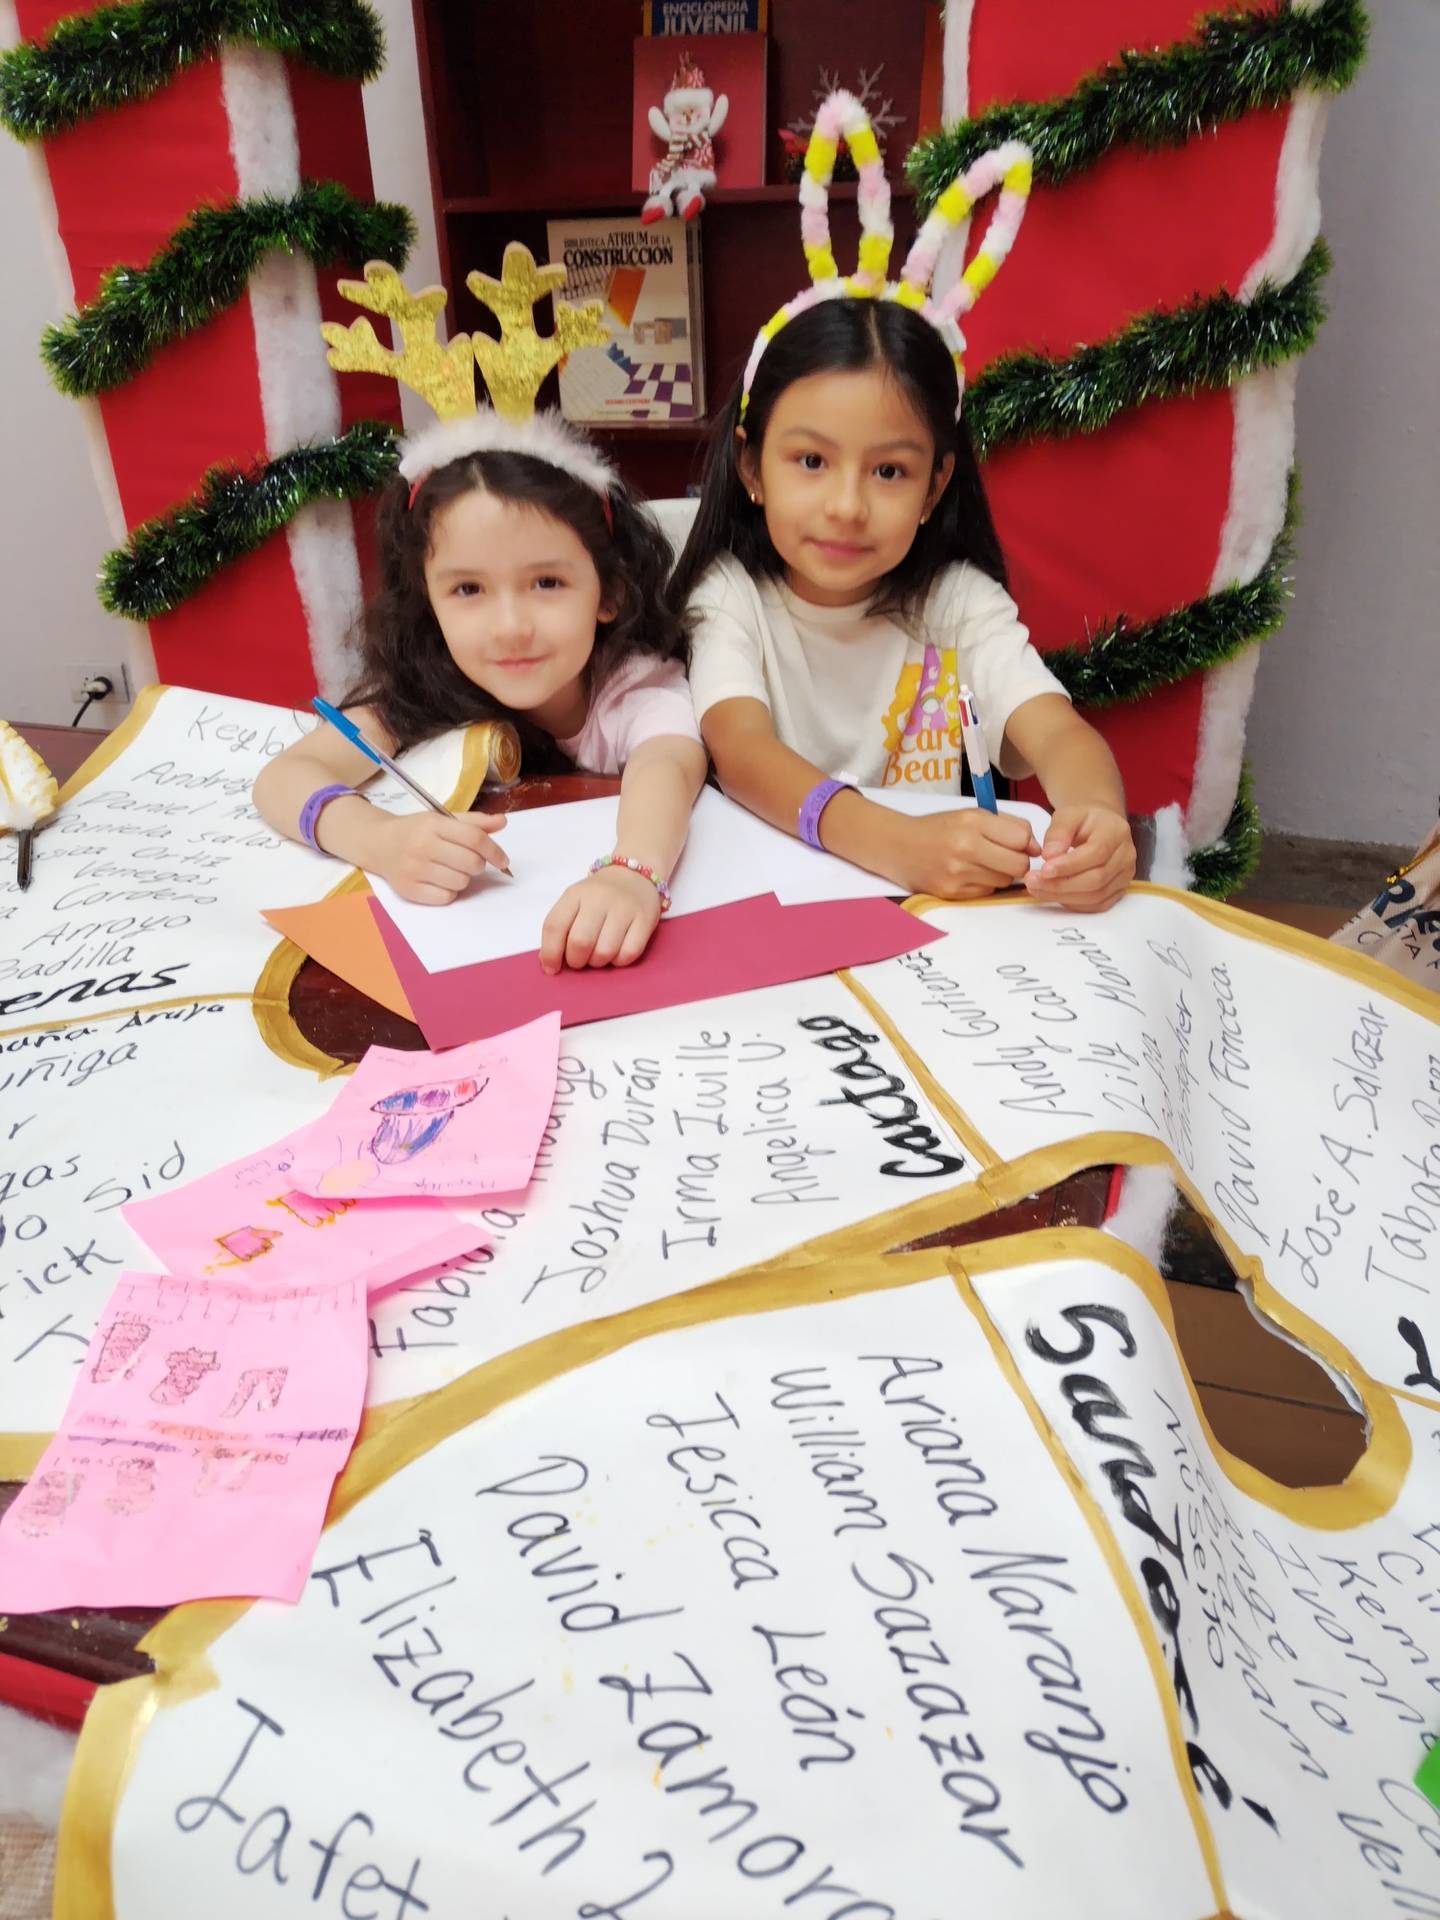 Este 2023 el Niñito Jesús y Santa sí están recibiendo las cartitas de los niños para Navidad. El Museo de los Niños puso una sucursal para entregar las cartitas. En la foto, las niñas Valentira Quirós y Luigina Pastor hacen sus cartitas al Niñito.